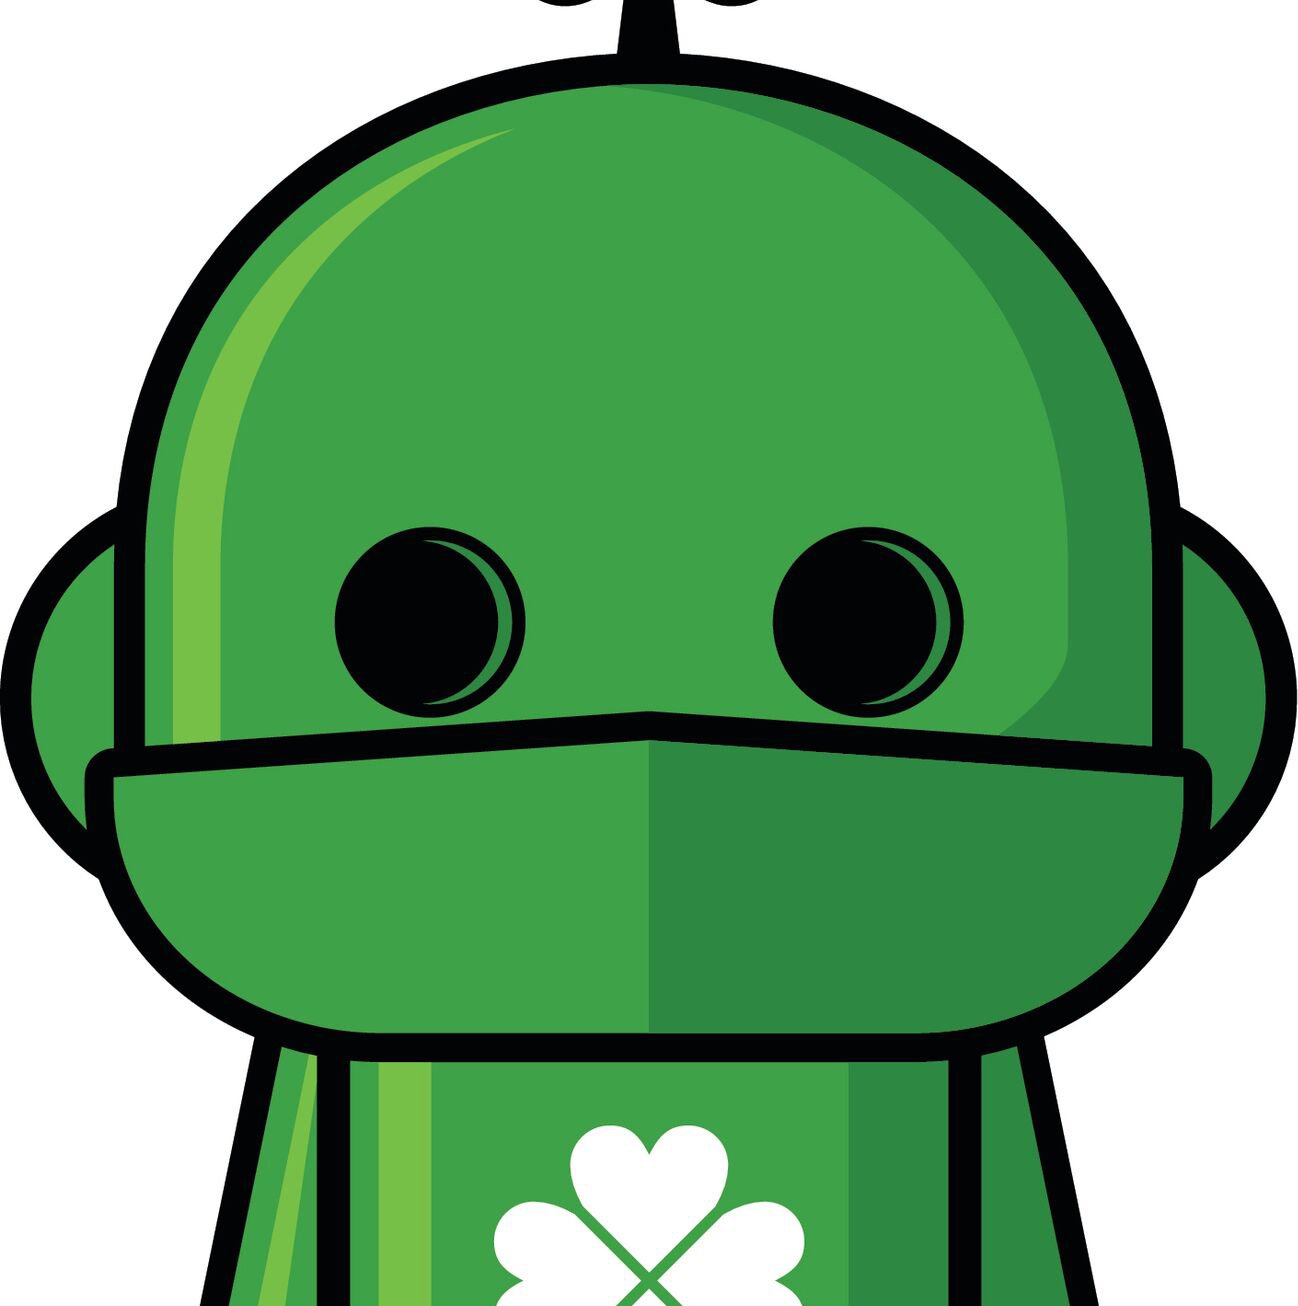 Green robot